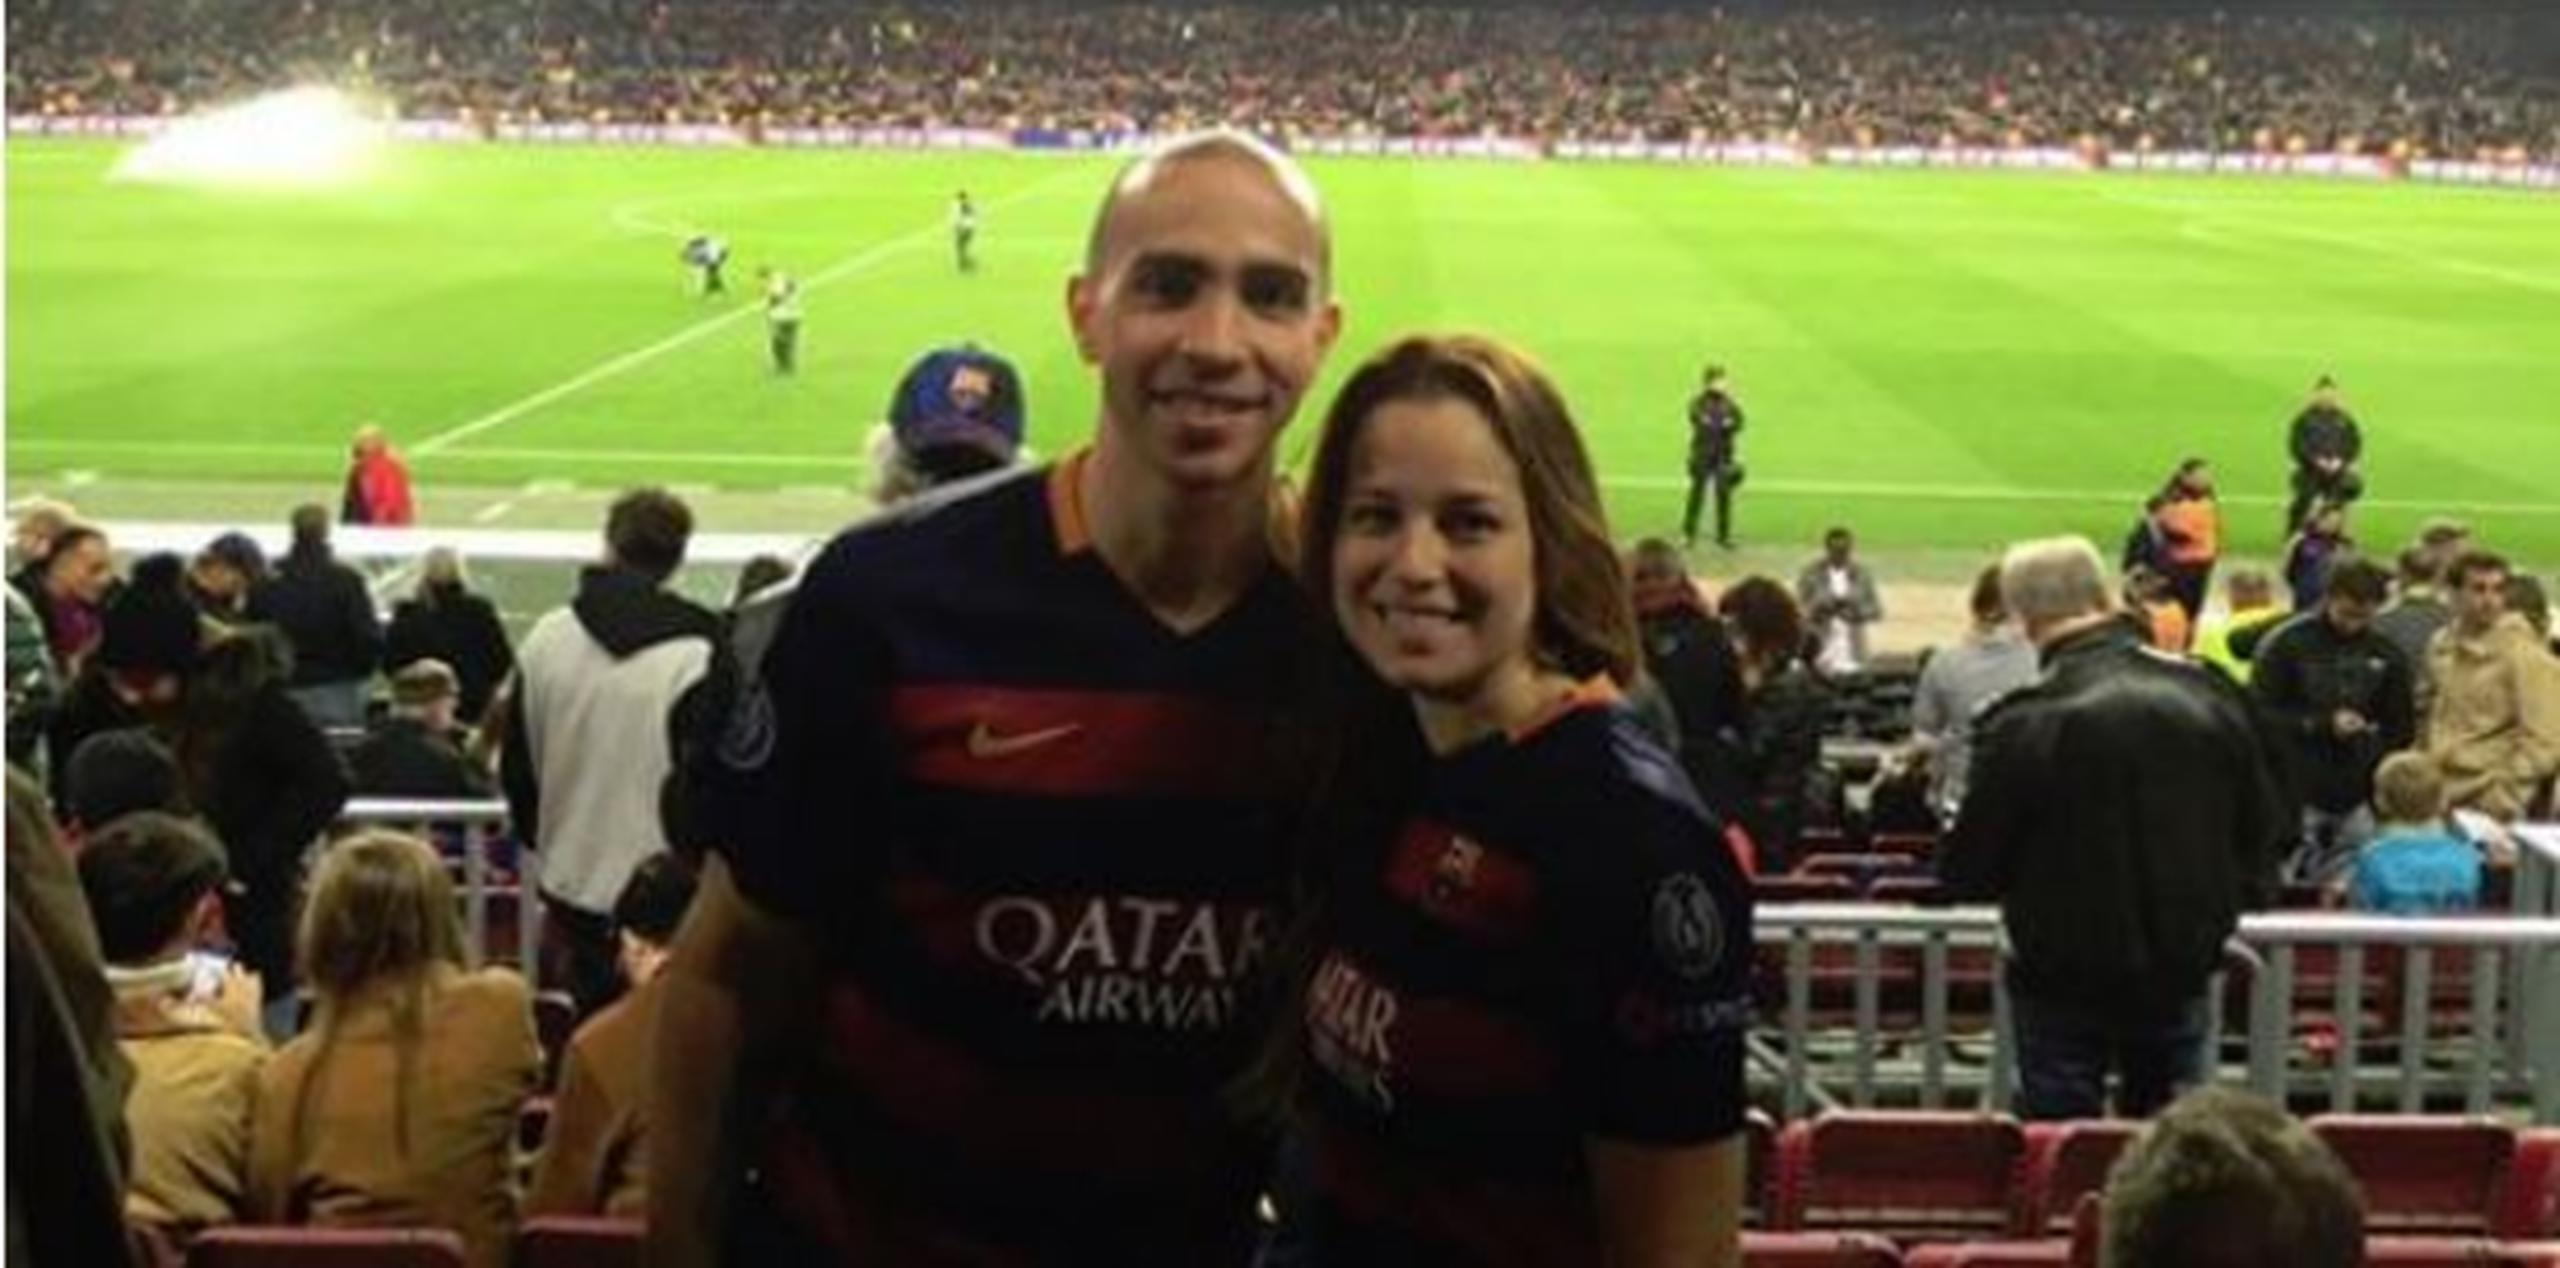 Carlos Arroyo y su esposa Xiomara Escobar en las gradas del Camp Nou para disfrutar de El Clásico del fútbol español. (Captura)